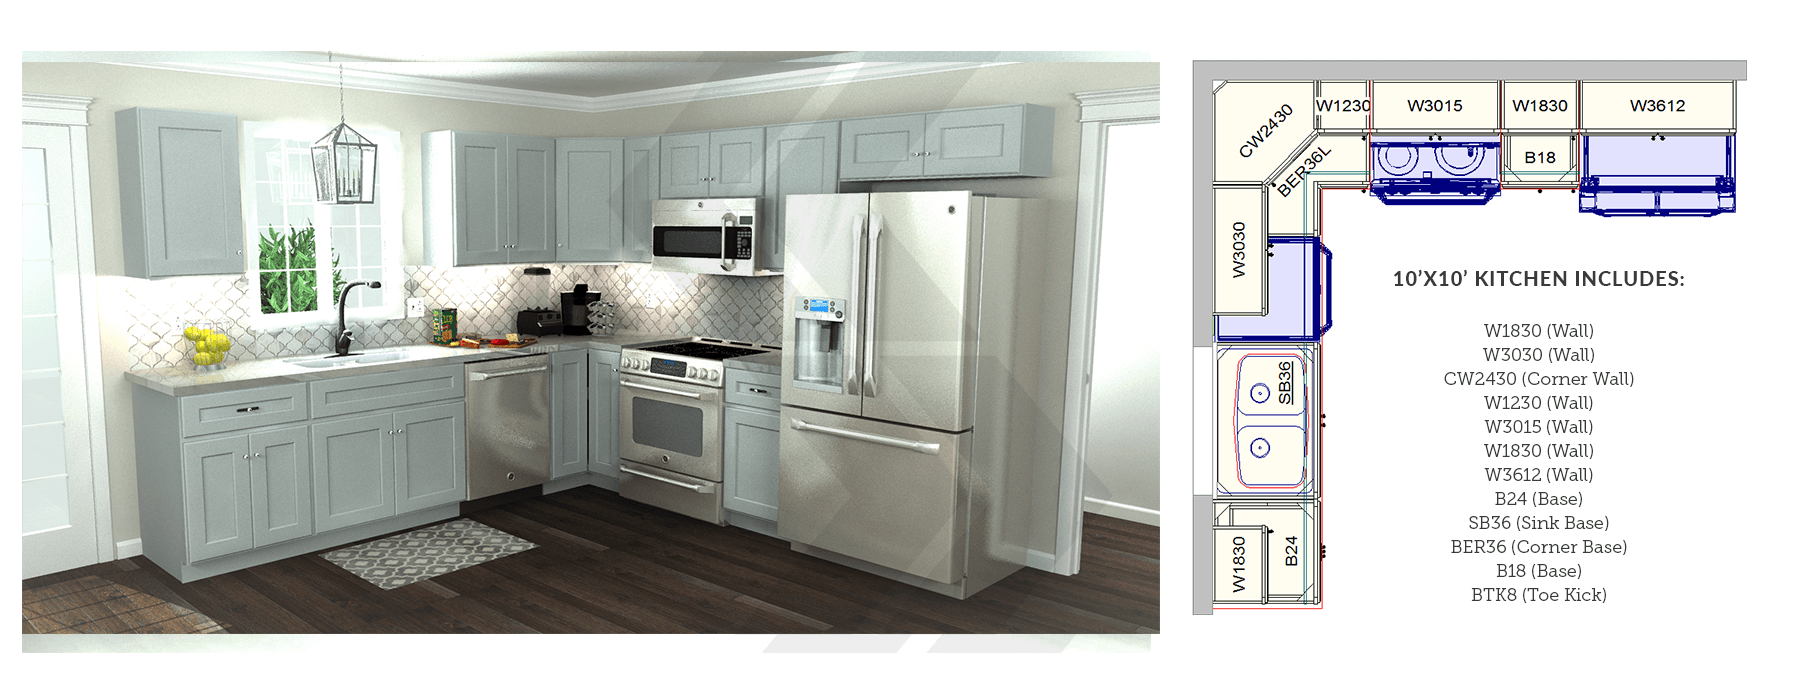 10' x 10' kitchen rendering next to corresponding kitchen floorplan?